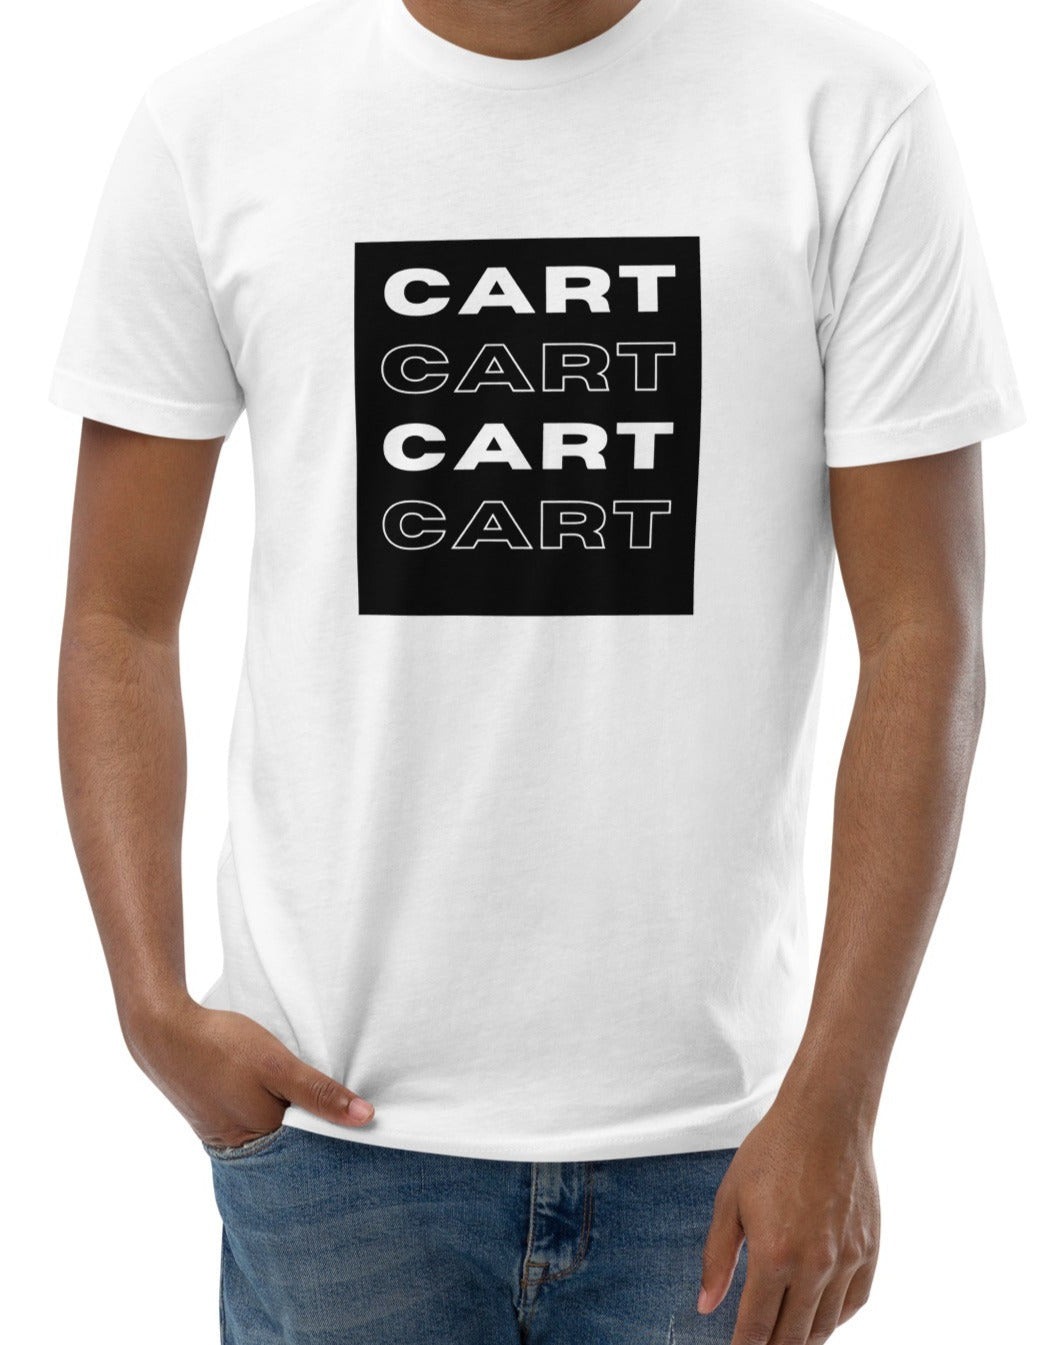 CART 4xBlackWhite -Unisex Short Sleeve T-shirt